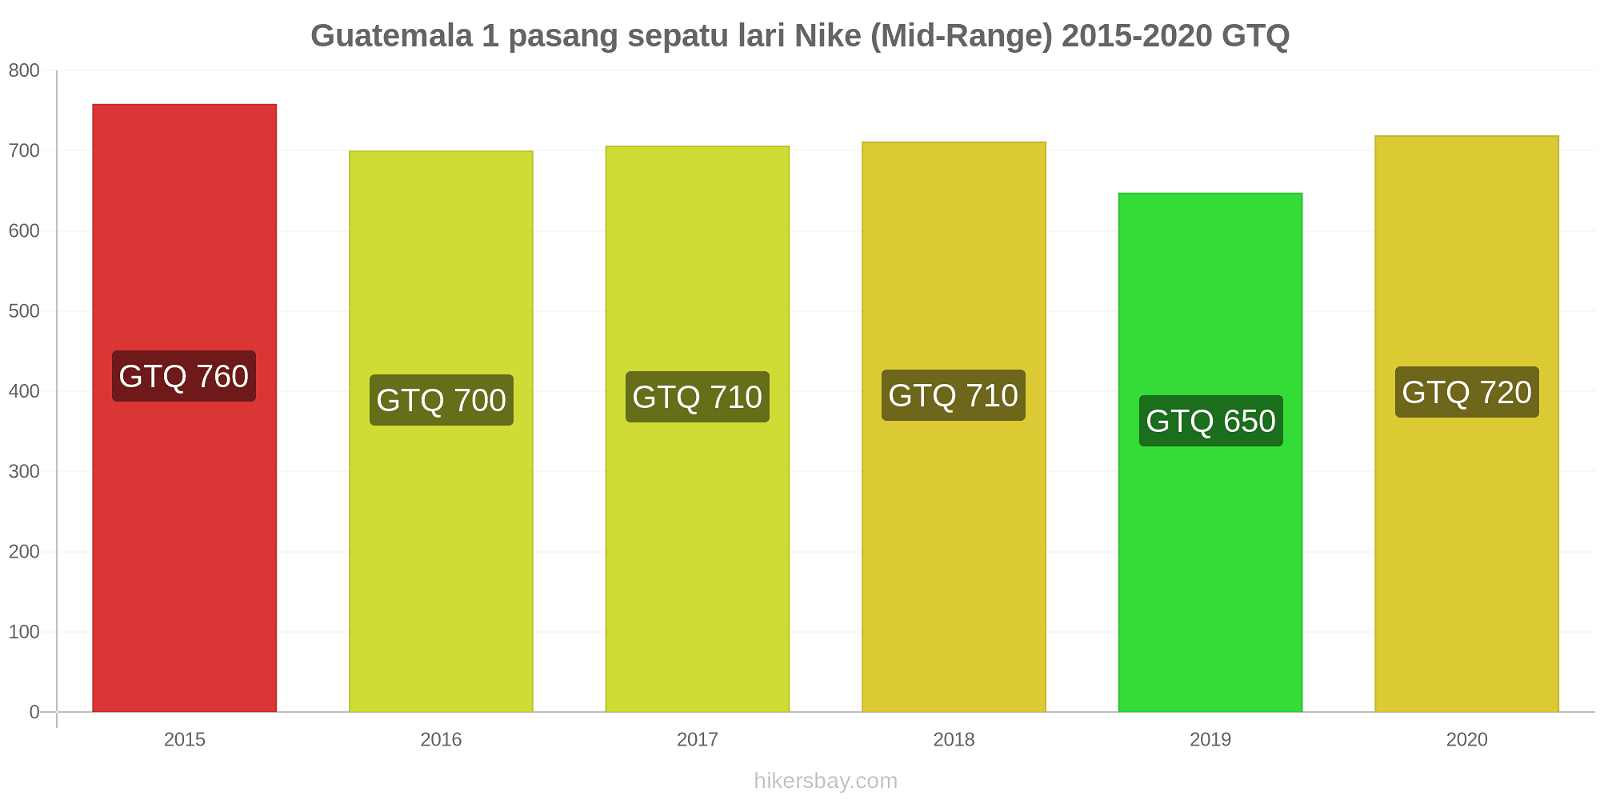 Guatemala perubahan harga 1 pasang sepatu lari Nike (Mid-Range) hikersbay.com